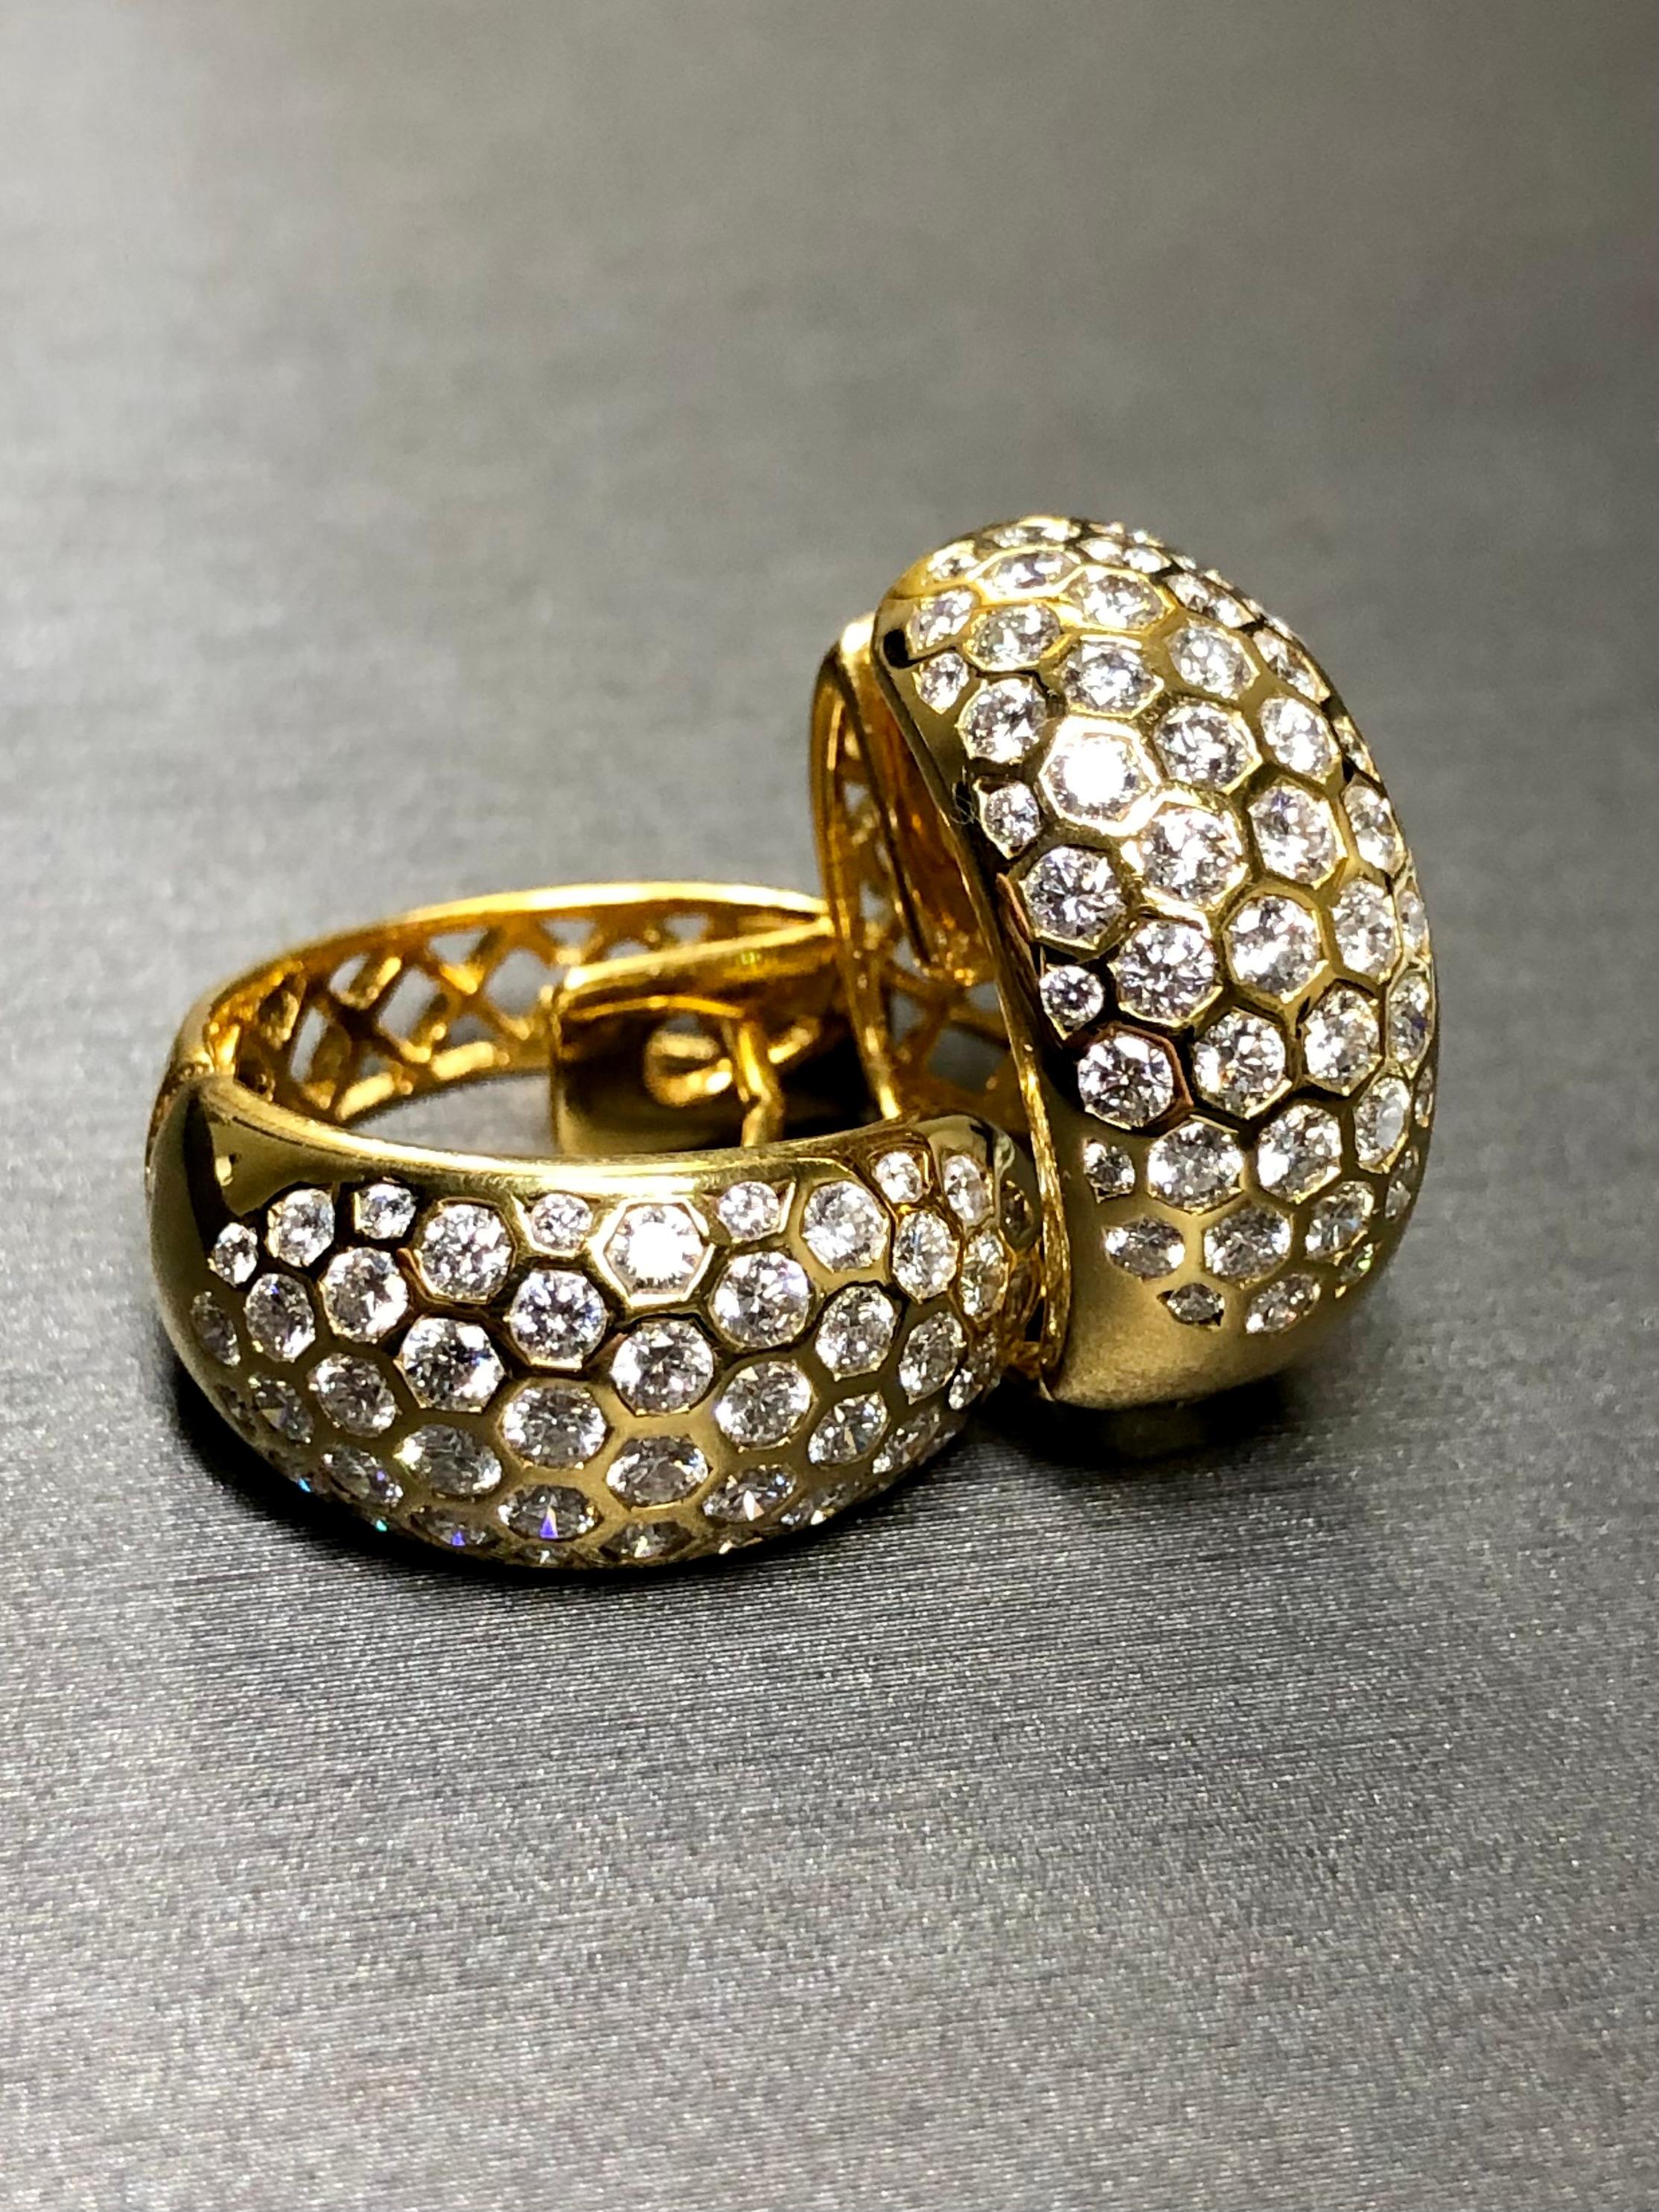 
Ein exquisites Paar Diamantohrringe, handgefertigt aus 18 Karat Gelbgold. Alle Diamanten haben die Farbe F-G und die Reinheit Vs1+ mit einem ungefähren Gesamtgewicht von 2,80cttw. Der Rahmen und die Konstruktion sind tadellos. Es wurden keine